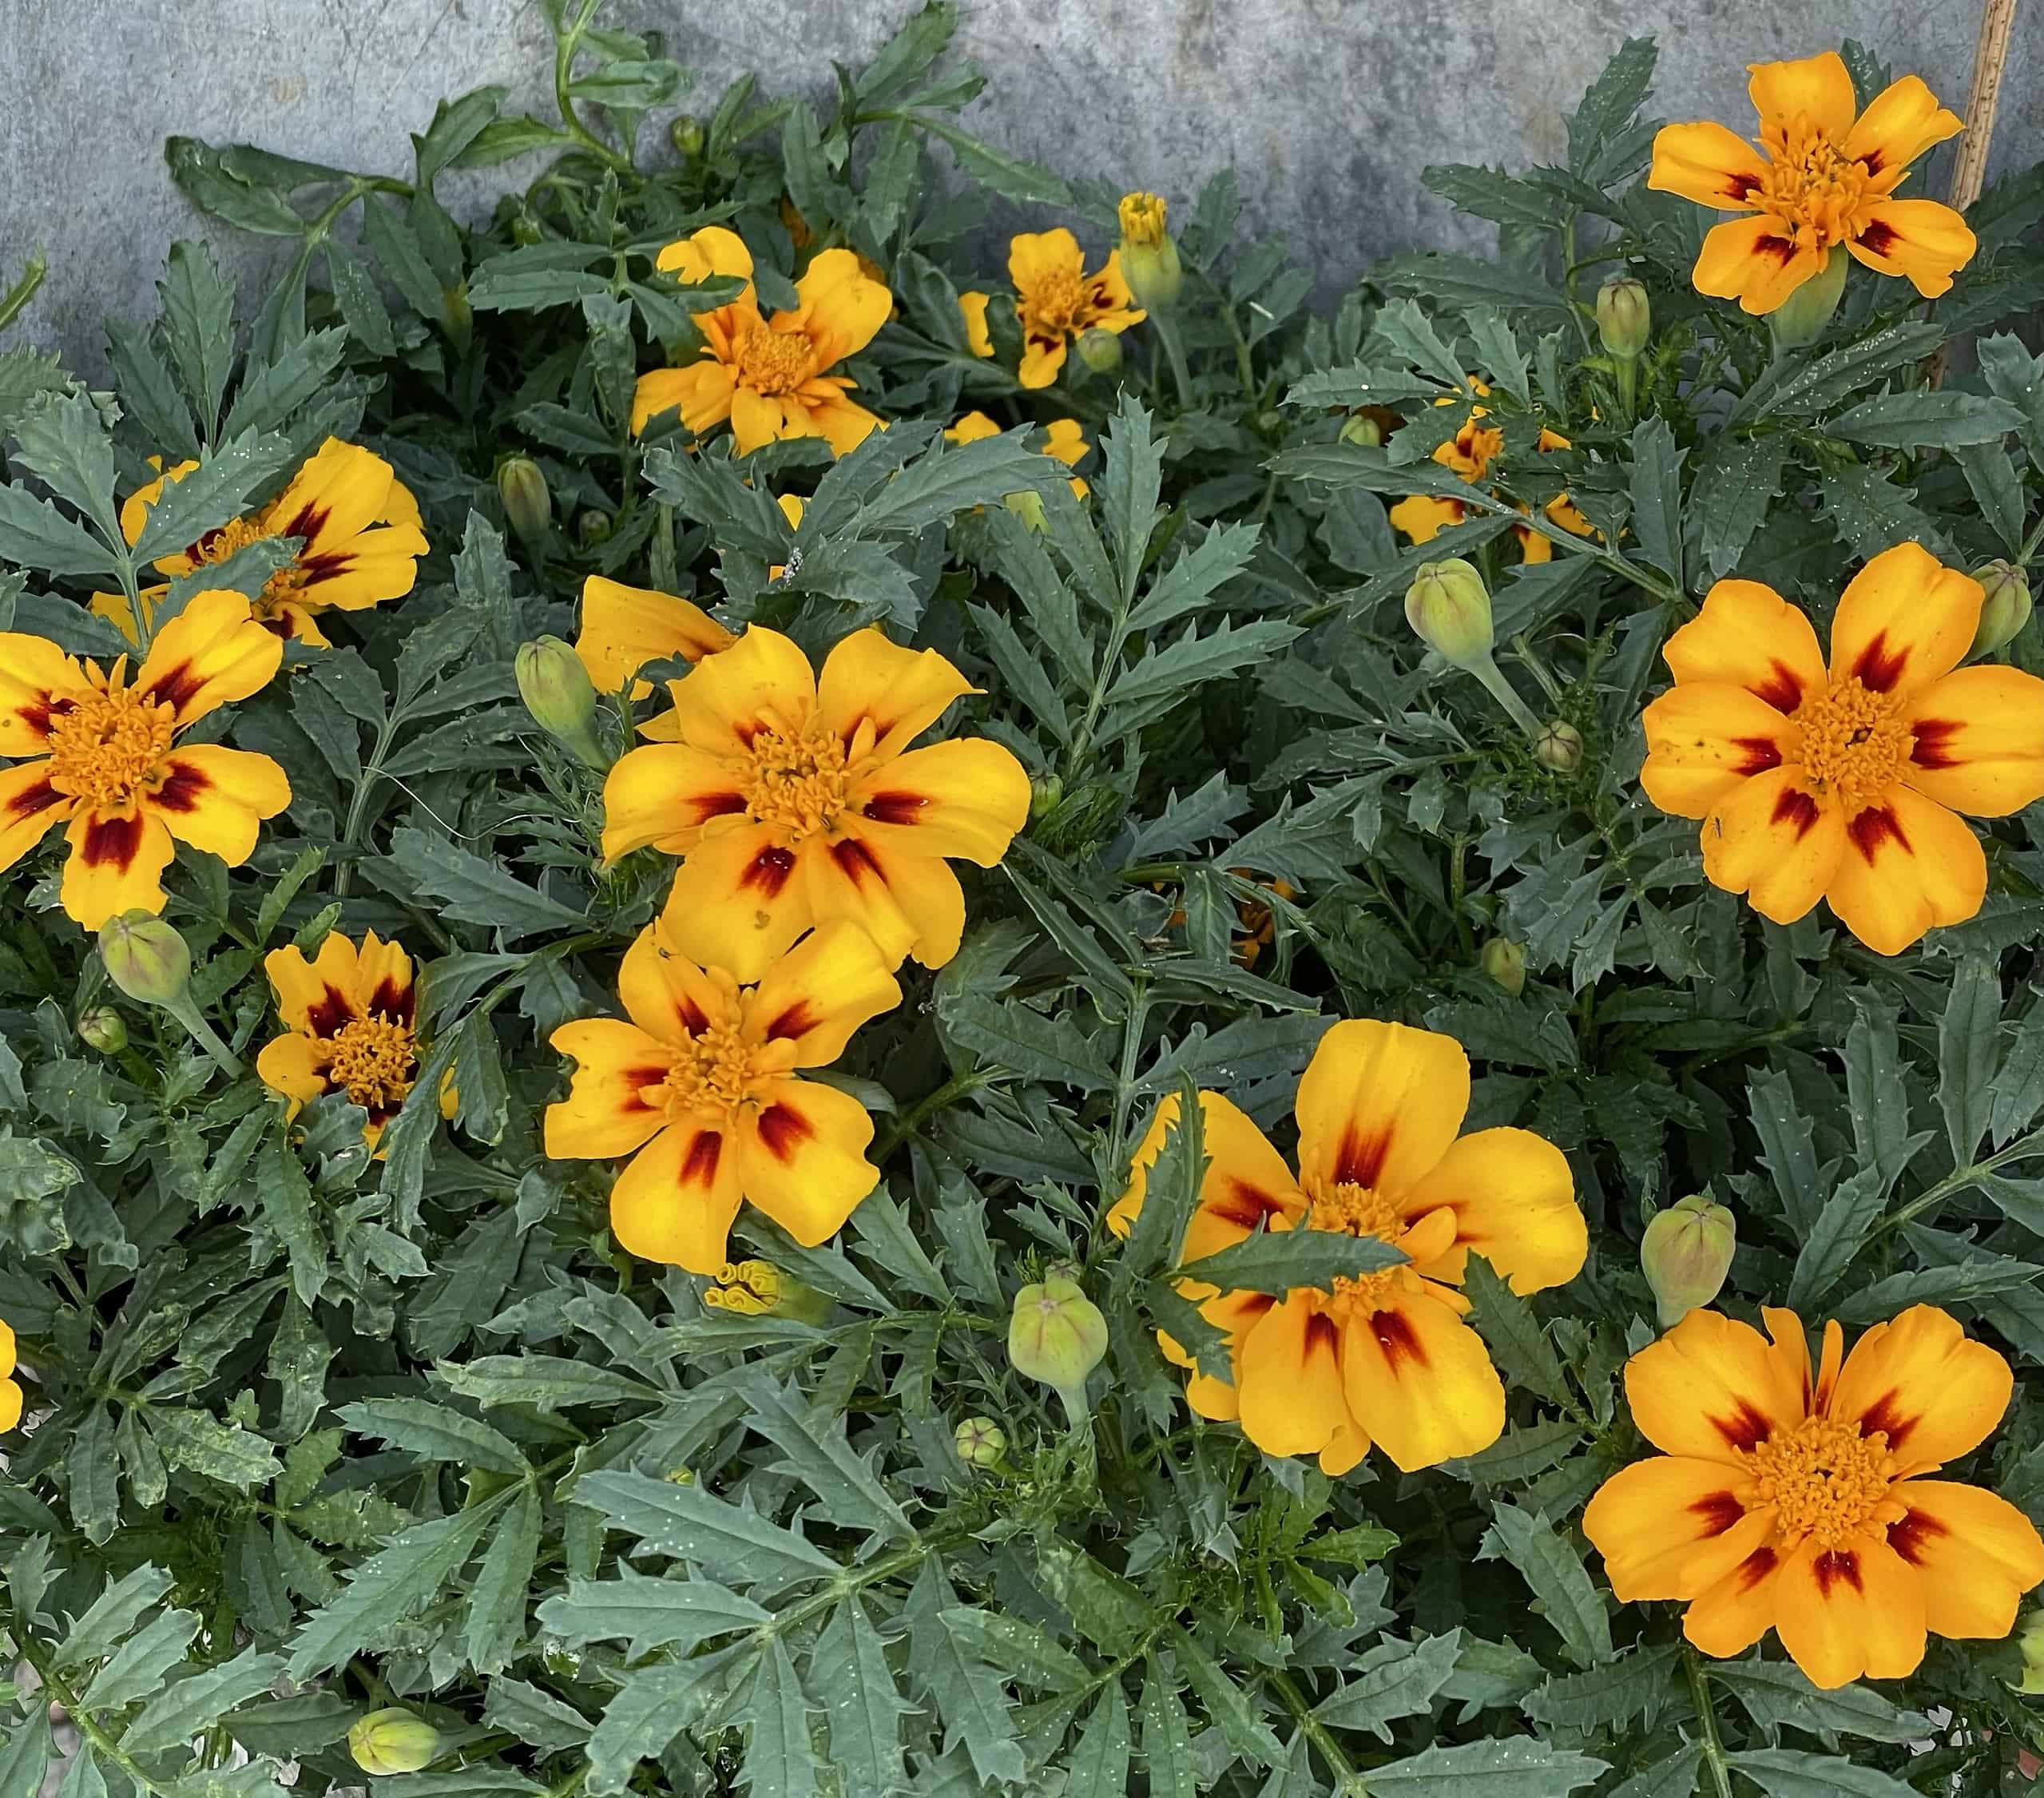 gelb-orange-rot blühnde Blumen im Topf